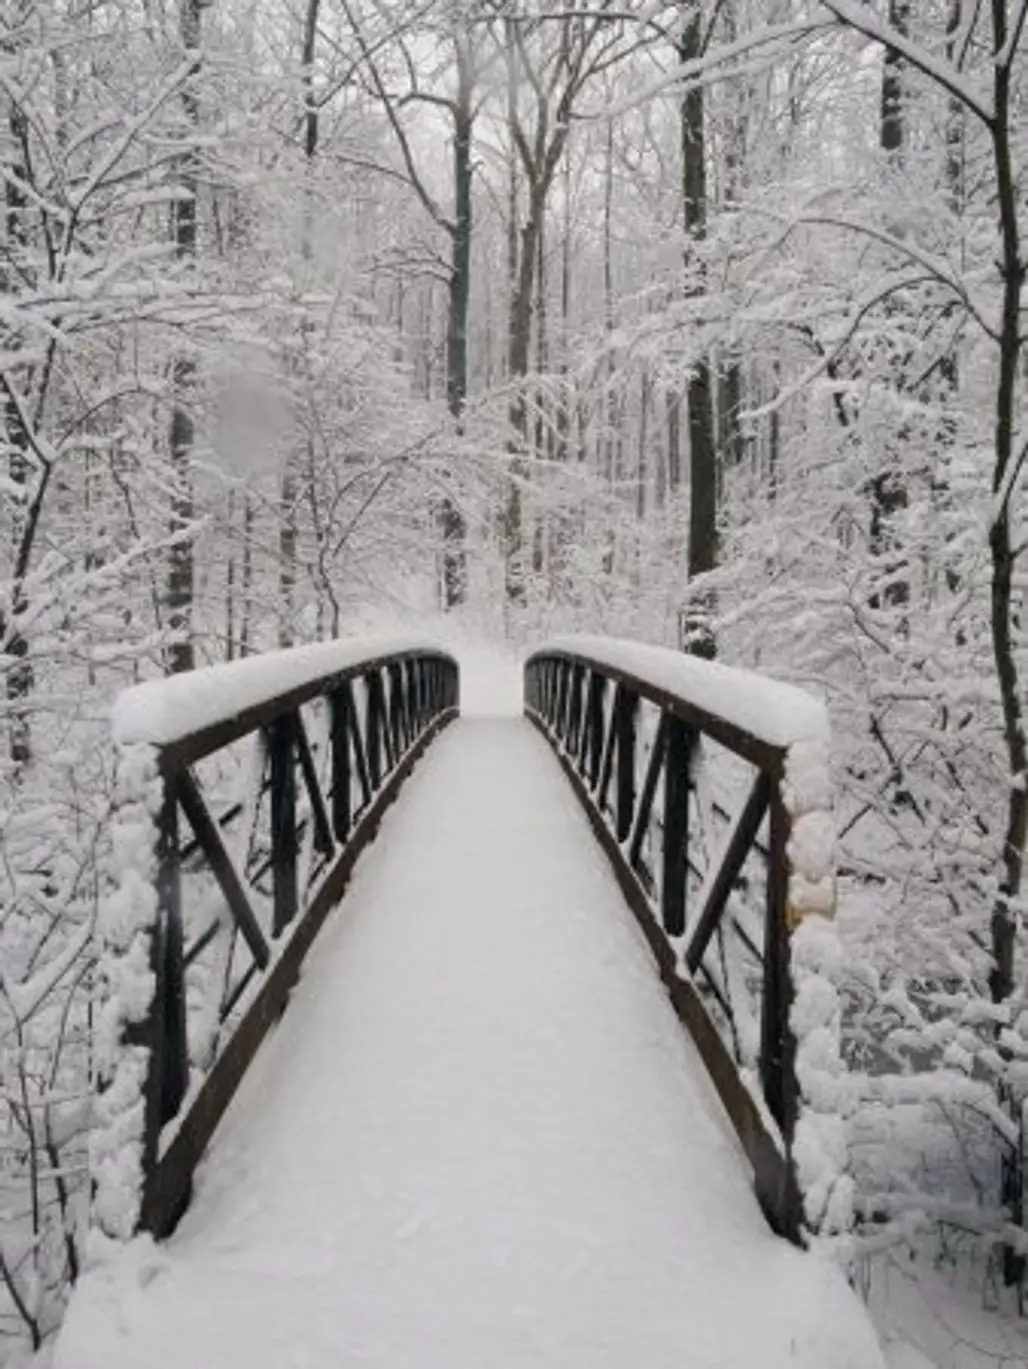 Another Snowy Bridge